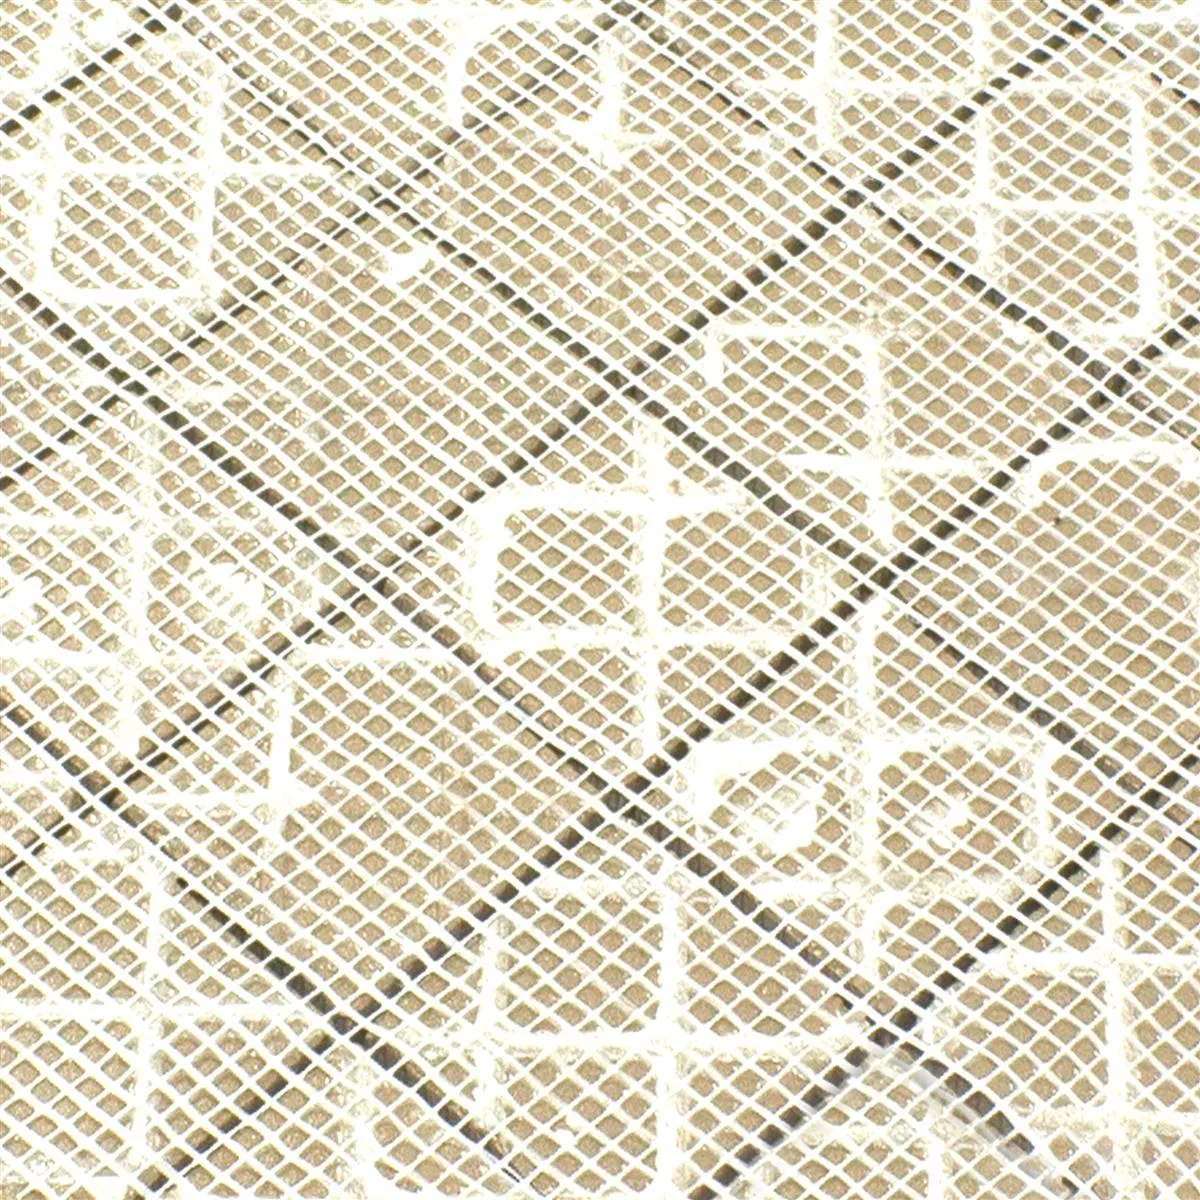 Sample Ceramic Mosaic Tile Ibiza Stone Optic Grey